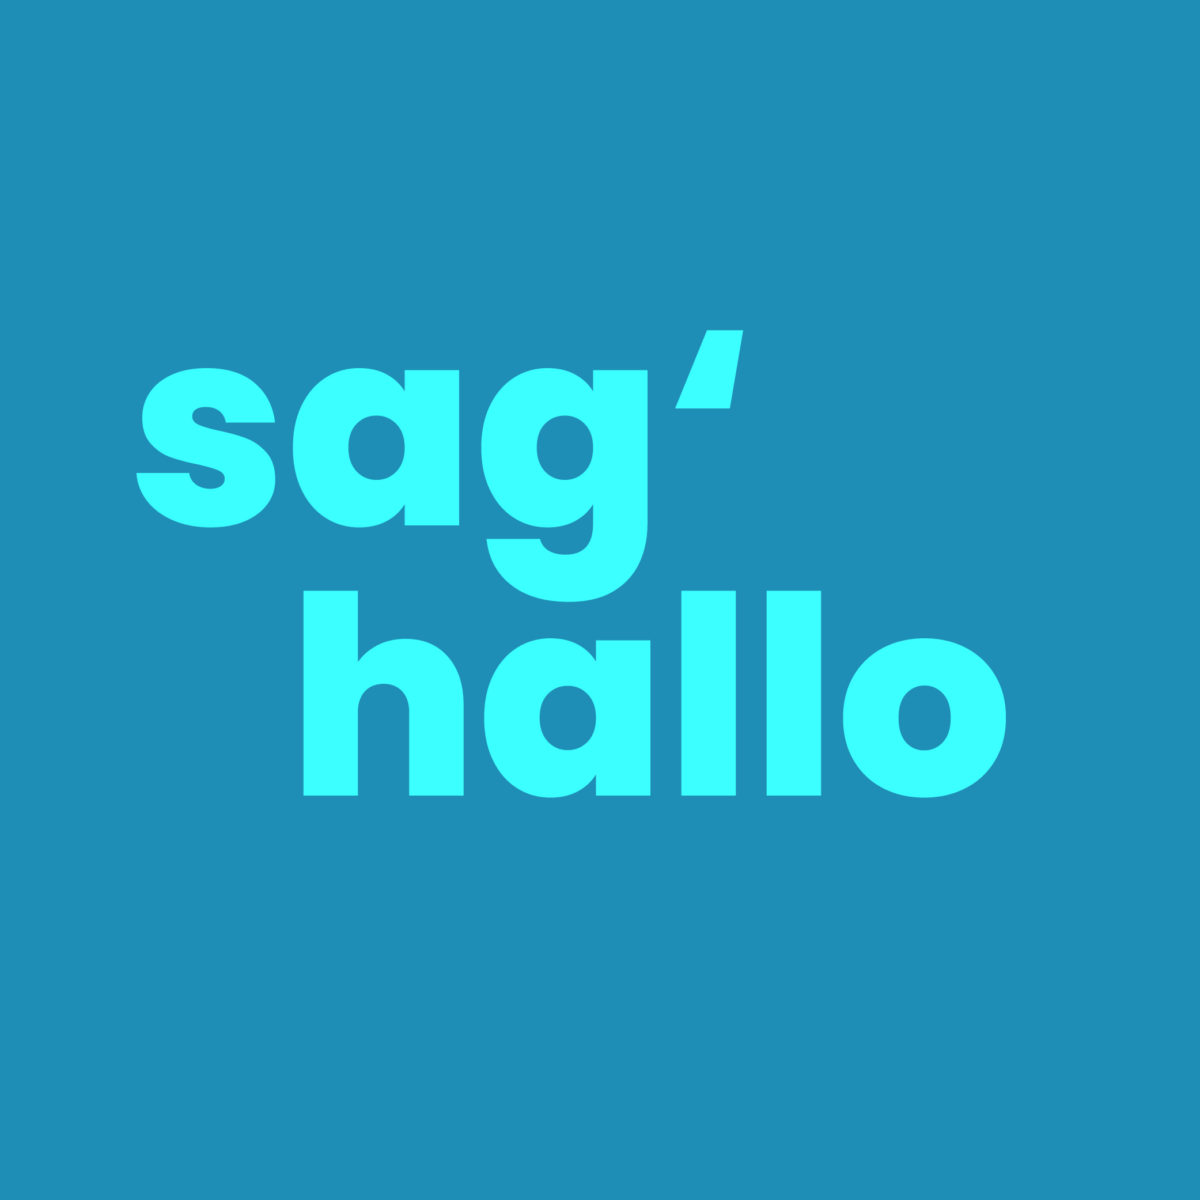 Blaue Kachel mit blauer Aufschrift "sag' hallo"